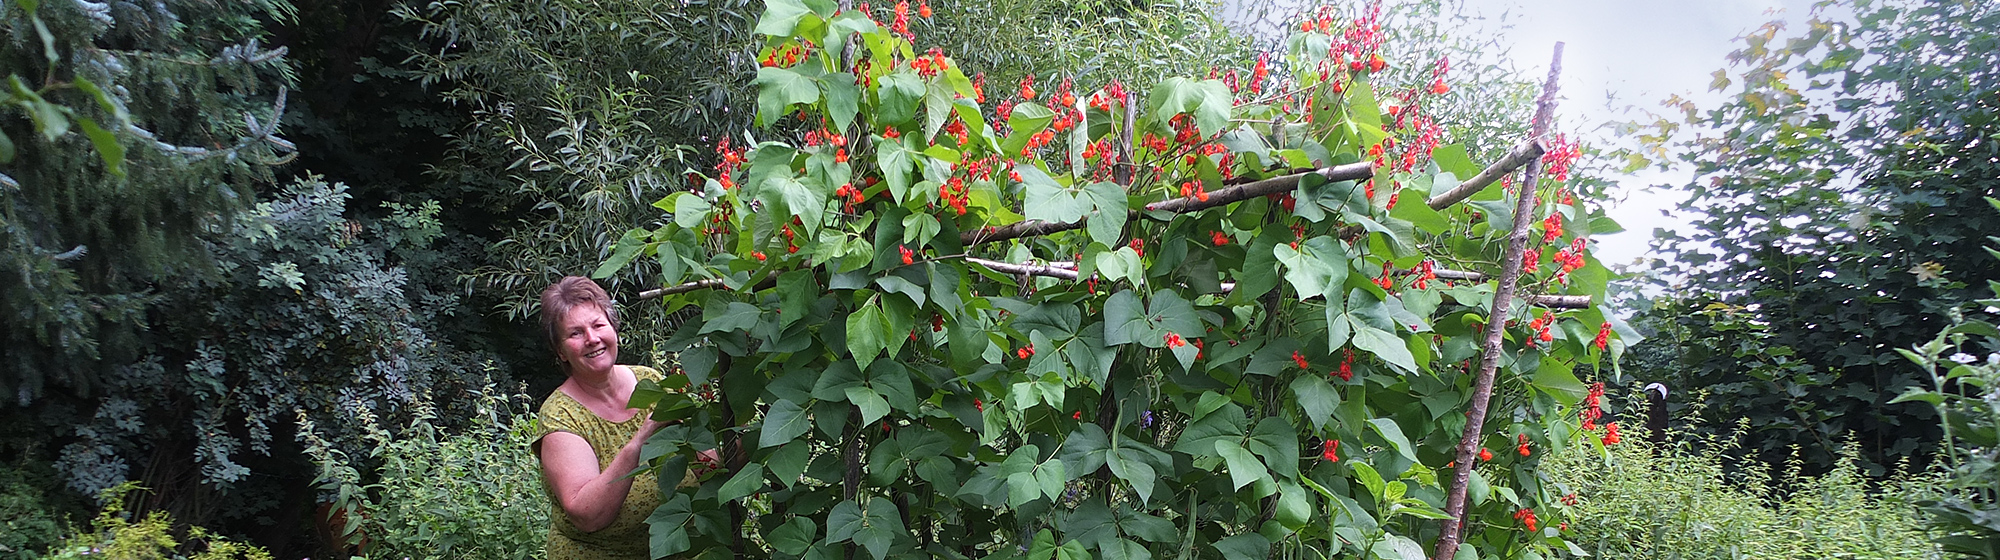 ... reiche Bohnenblüte im Naturgarten